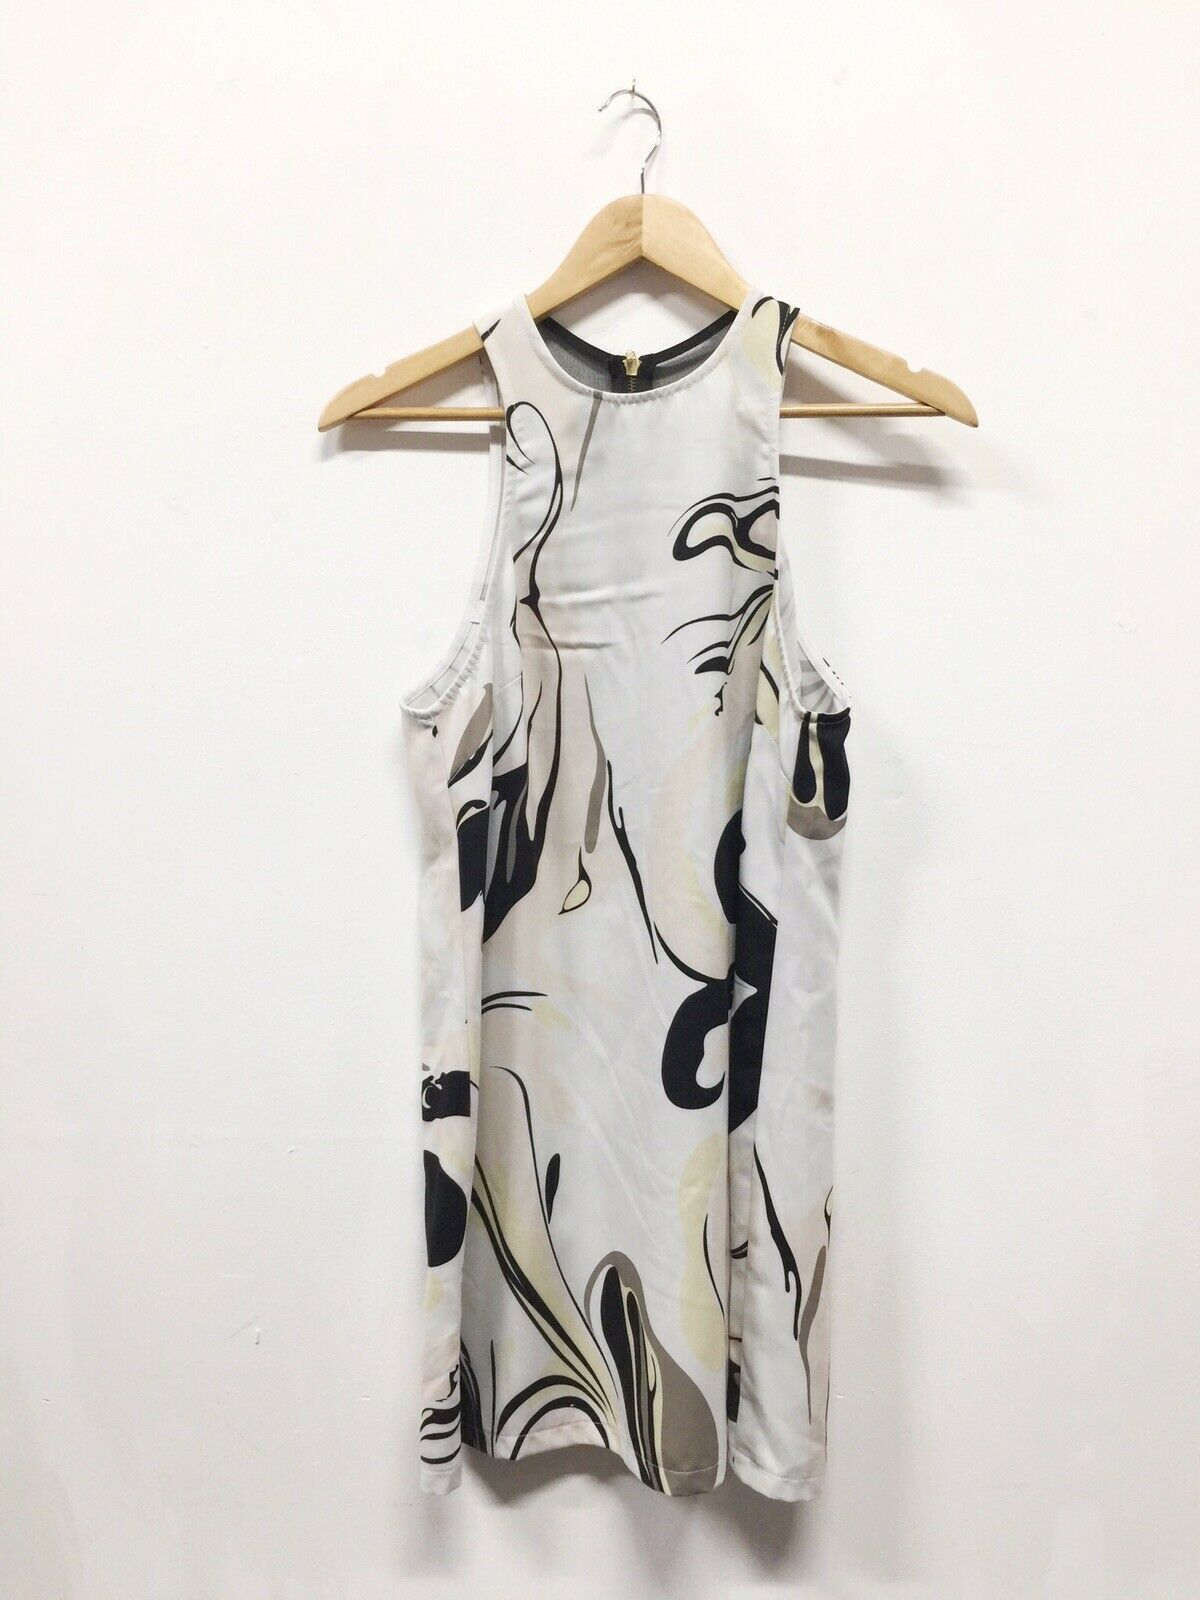 Shona Joy Swirl Zip Swing Dress - Size 12